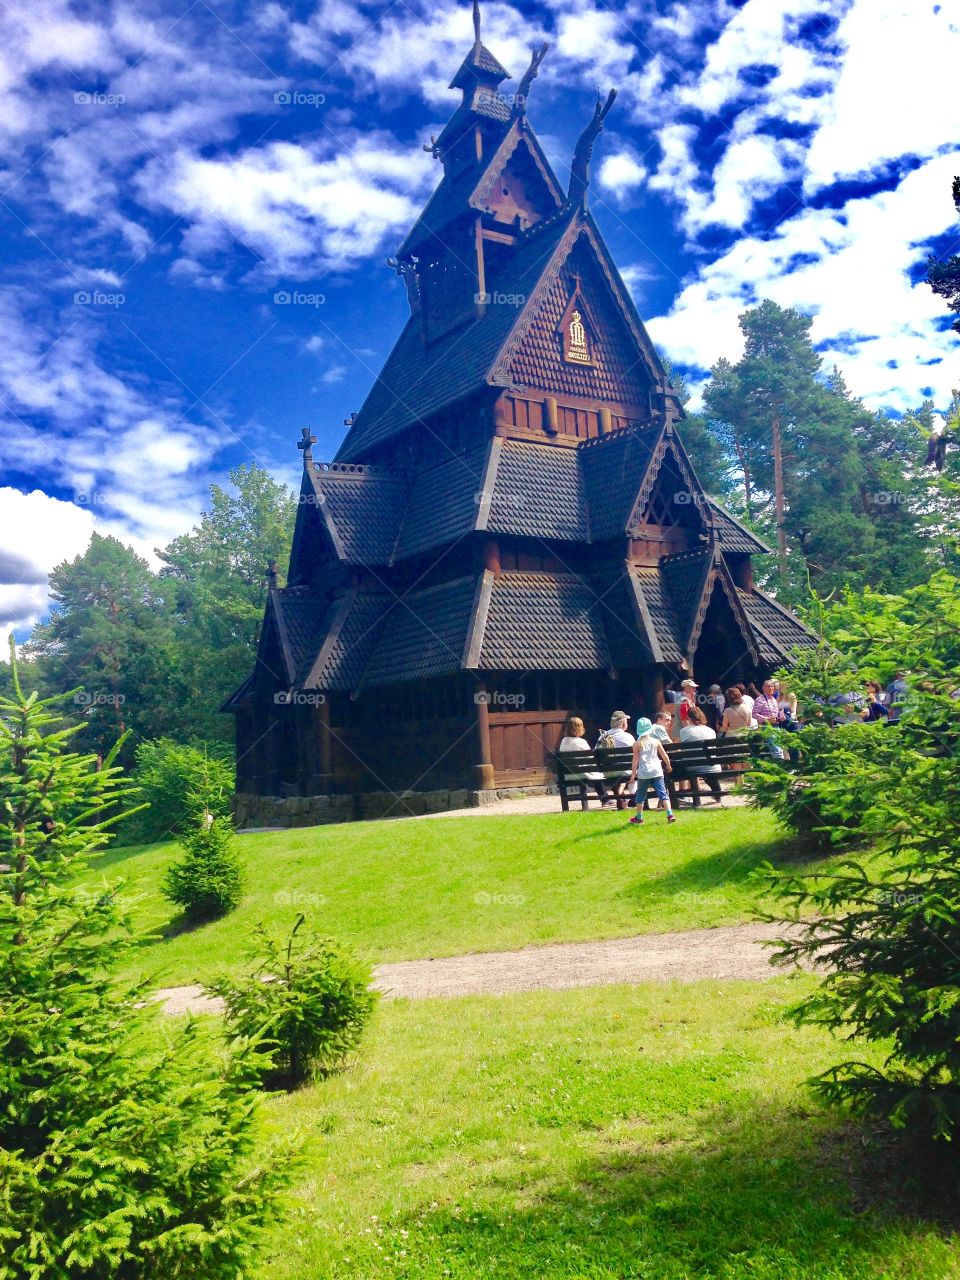 Norwegian outdoor museum 